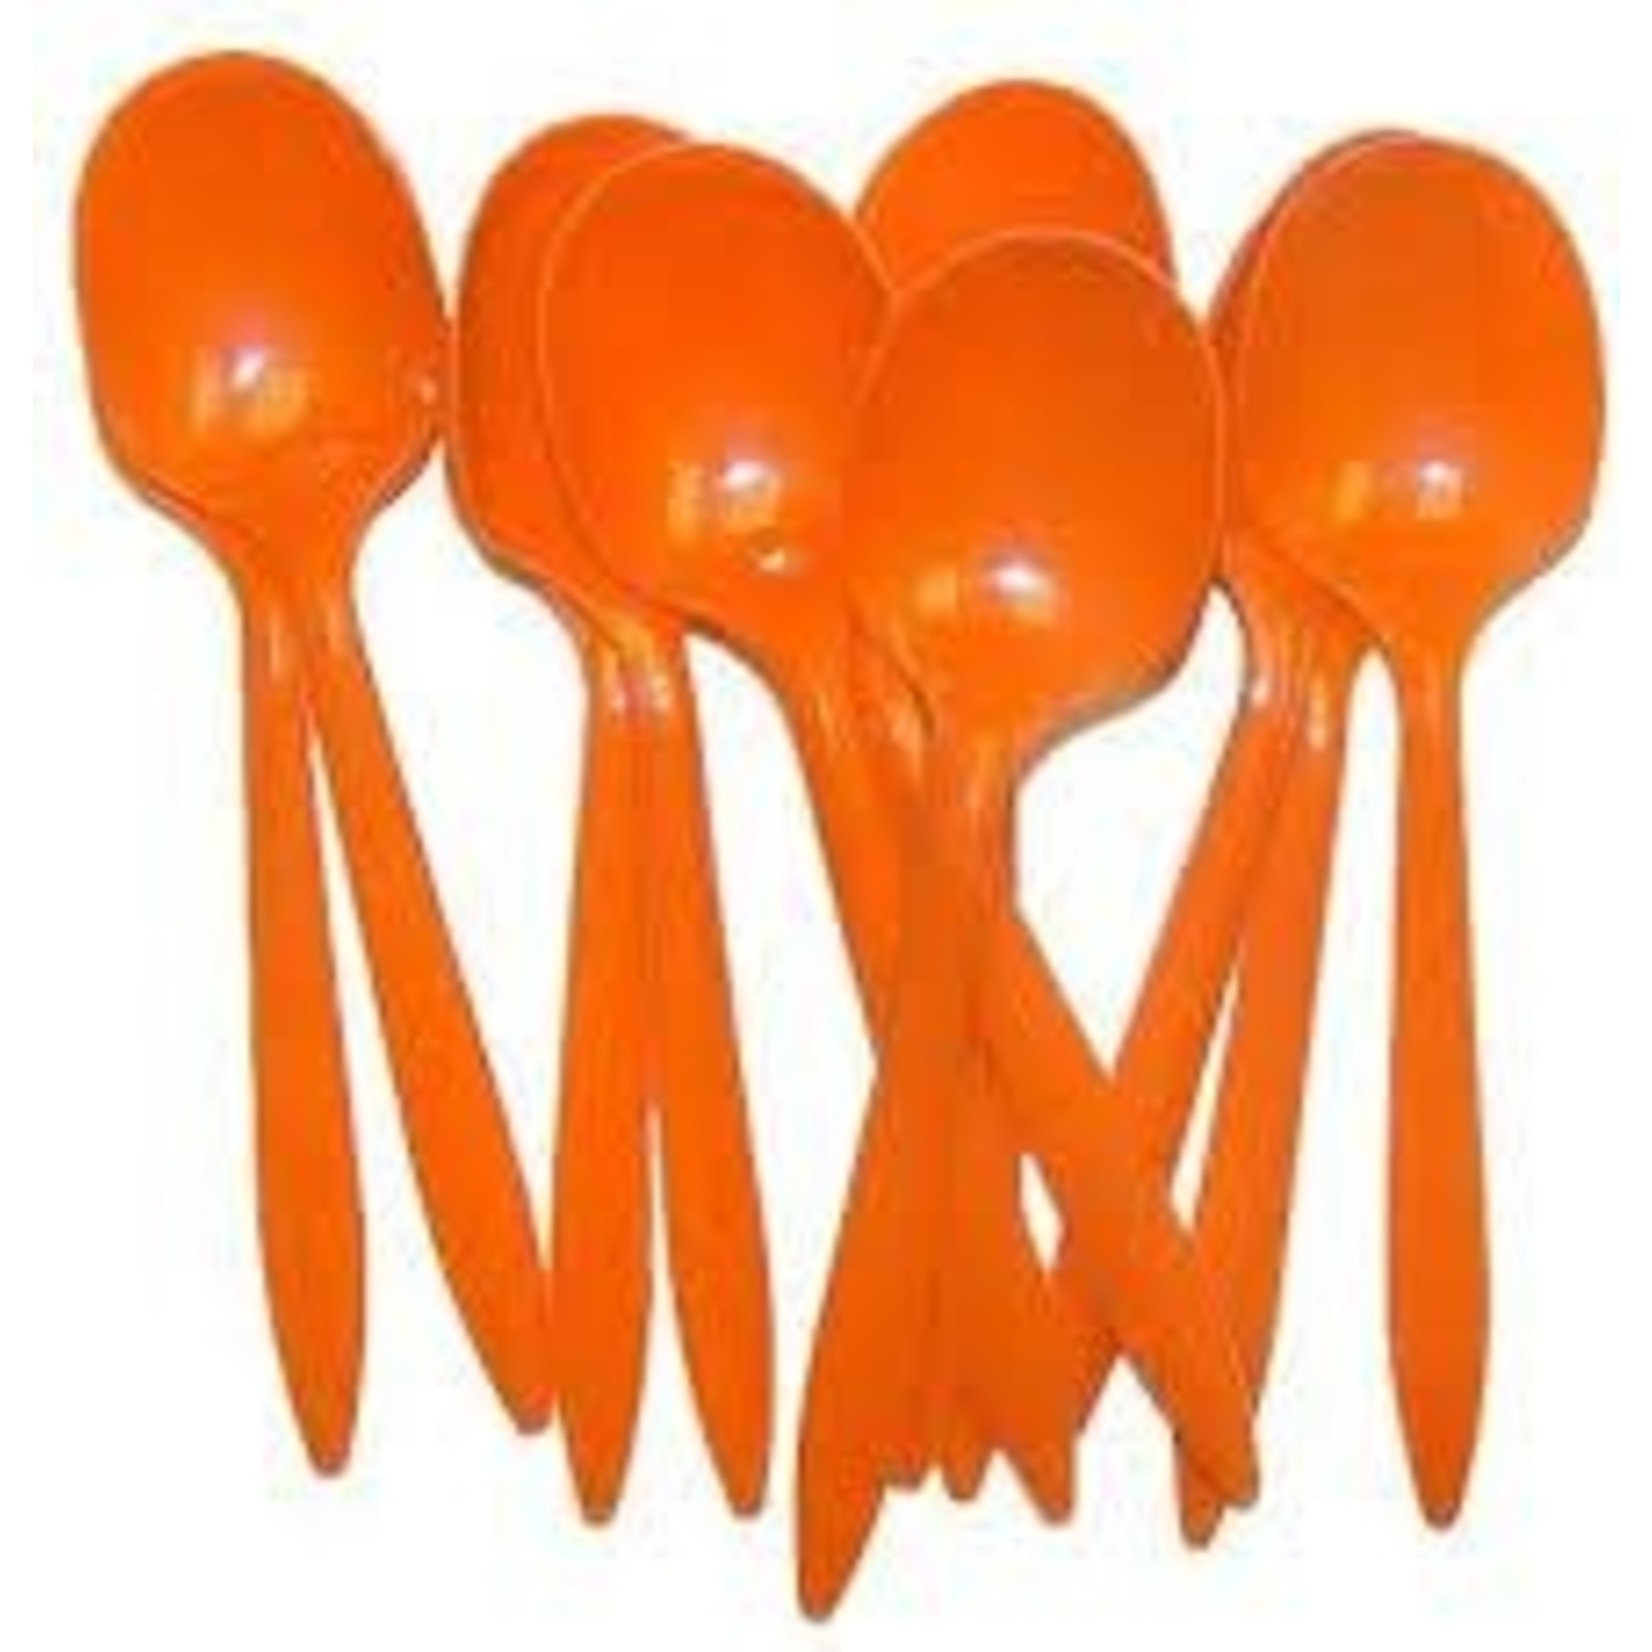 Coral Orange Premium Spoons 24ct